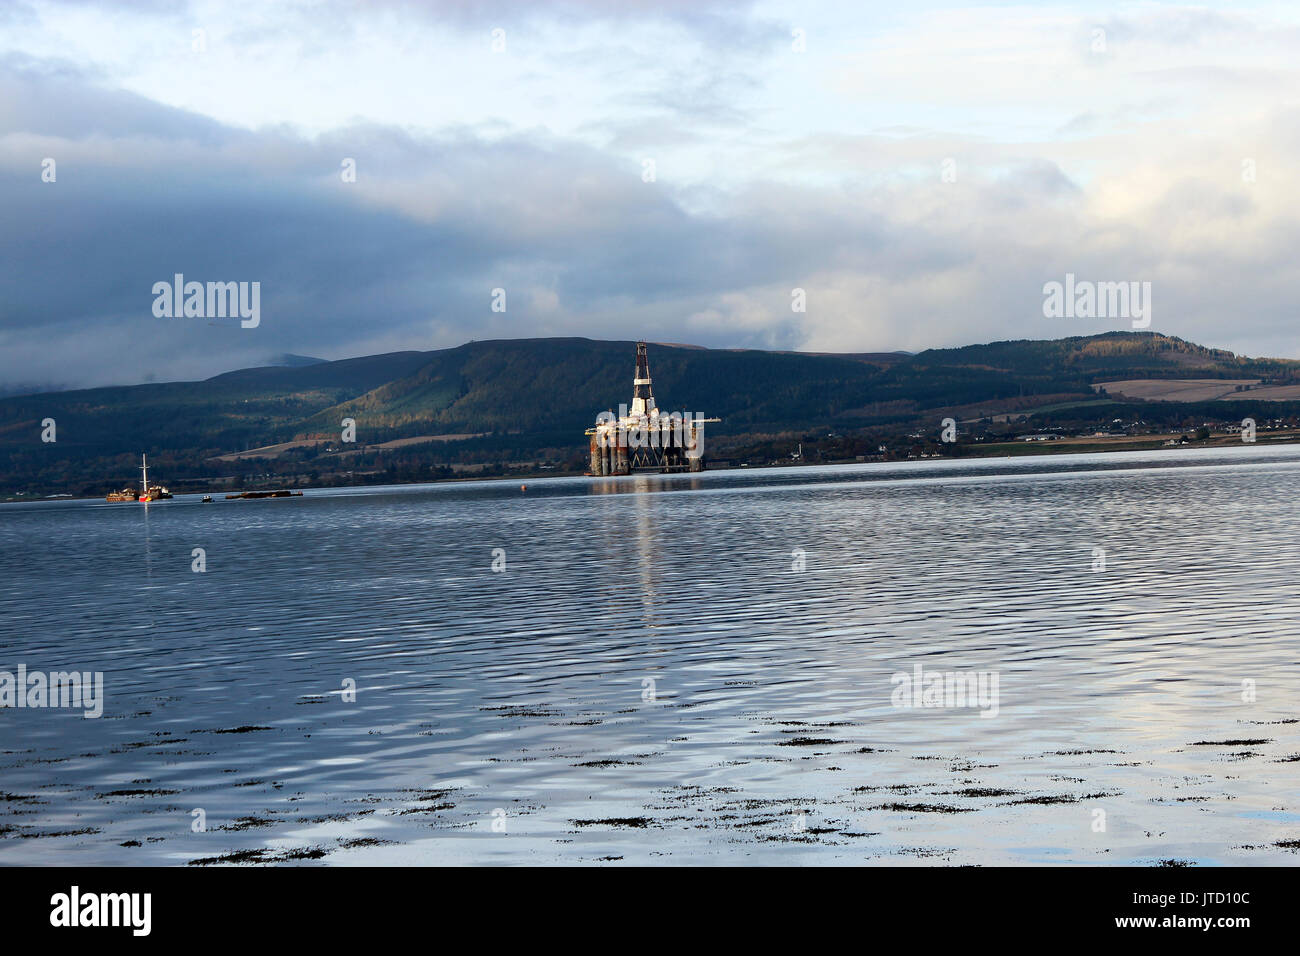 Schottland, Highlands, Scottish Scenery, Oil Platform, Oil Rig, Bohranlage, Industrie auf See, Wasserreflektionen, Green Mountain Hintergrund Stockfoto